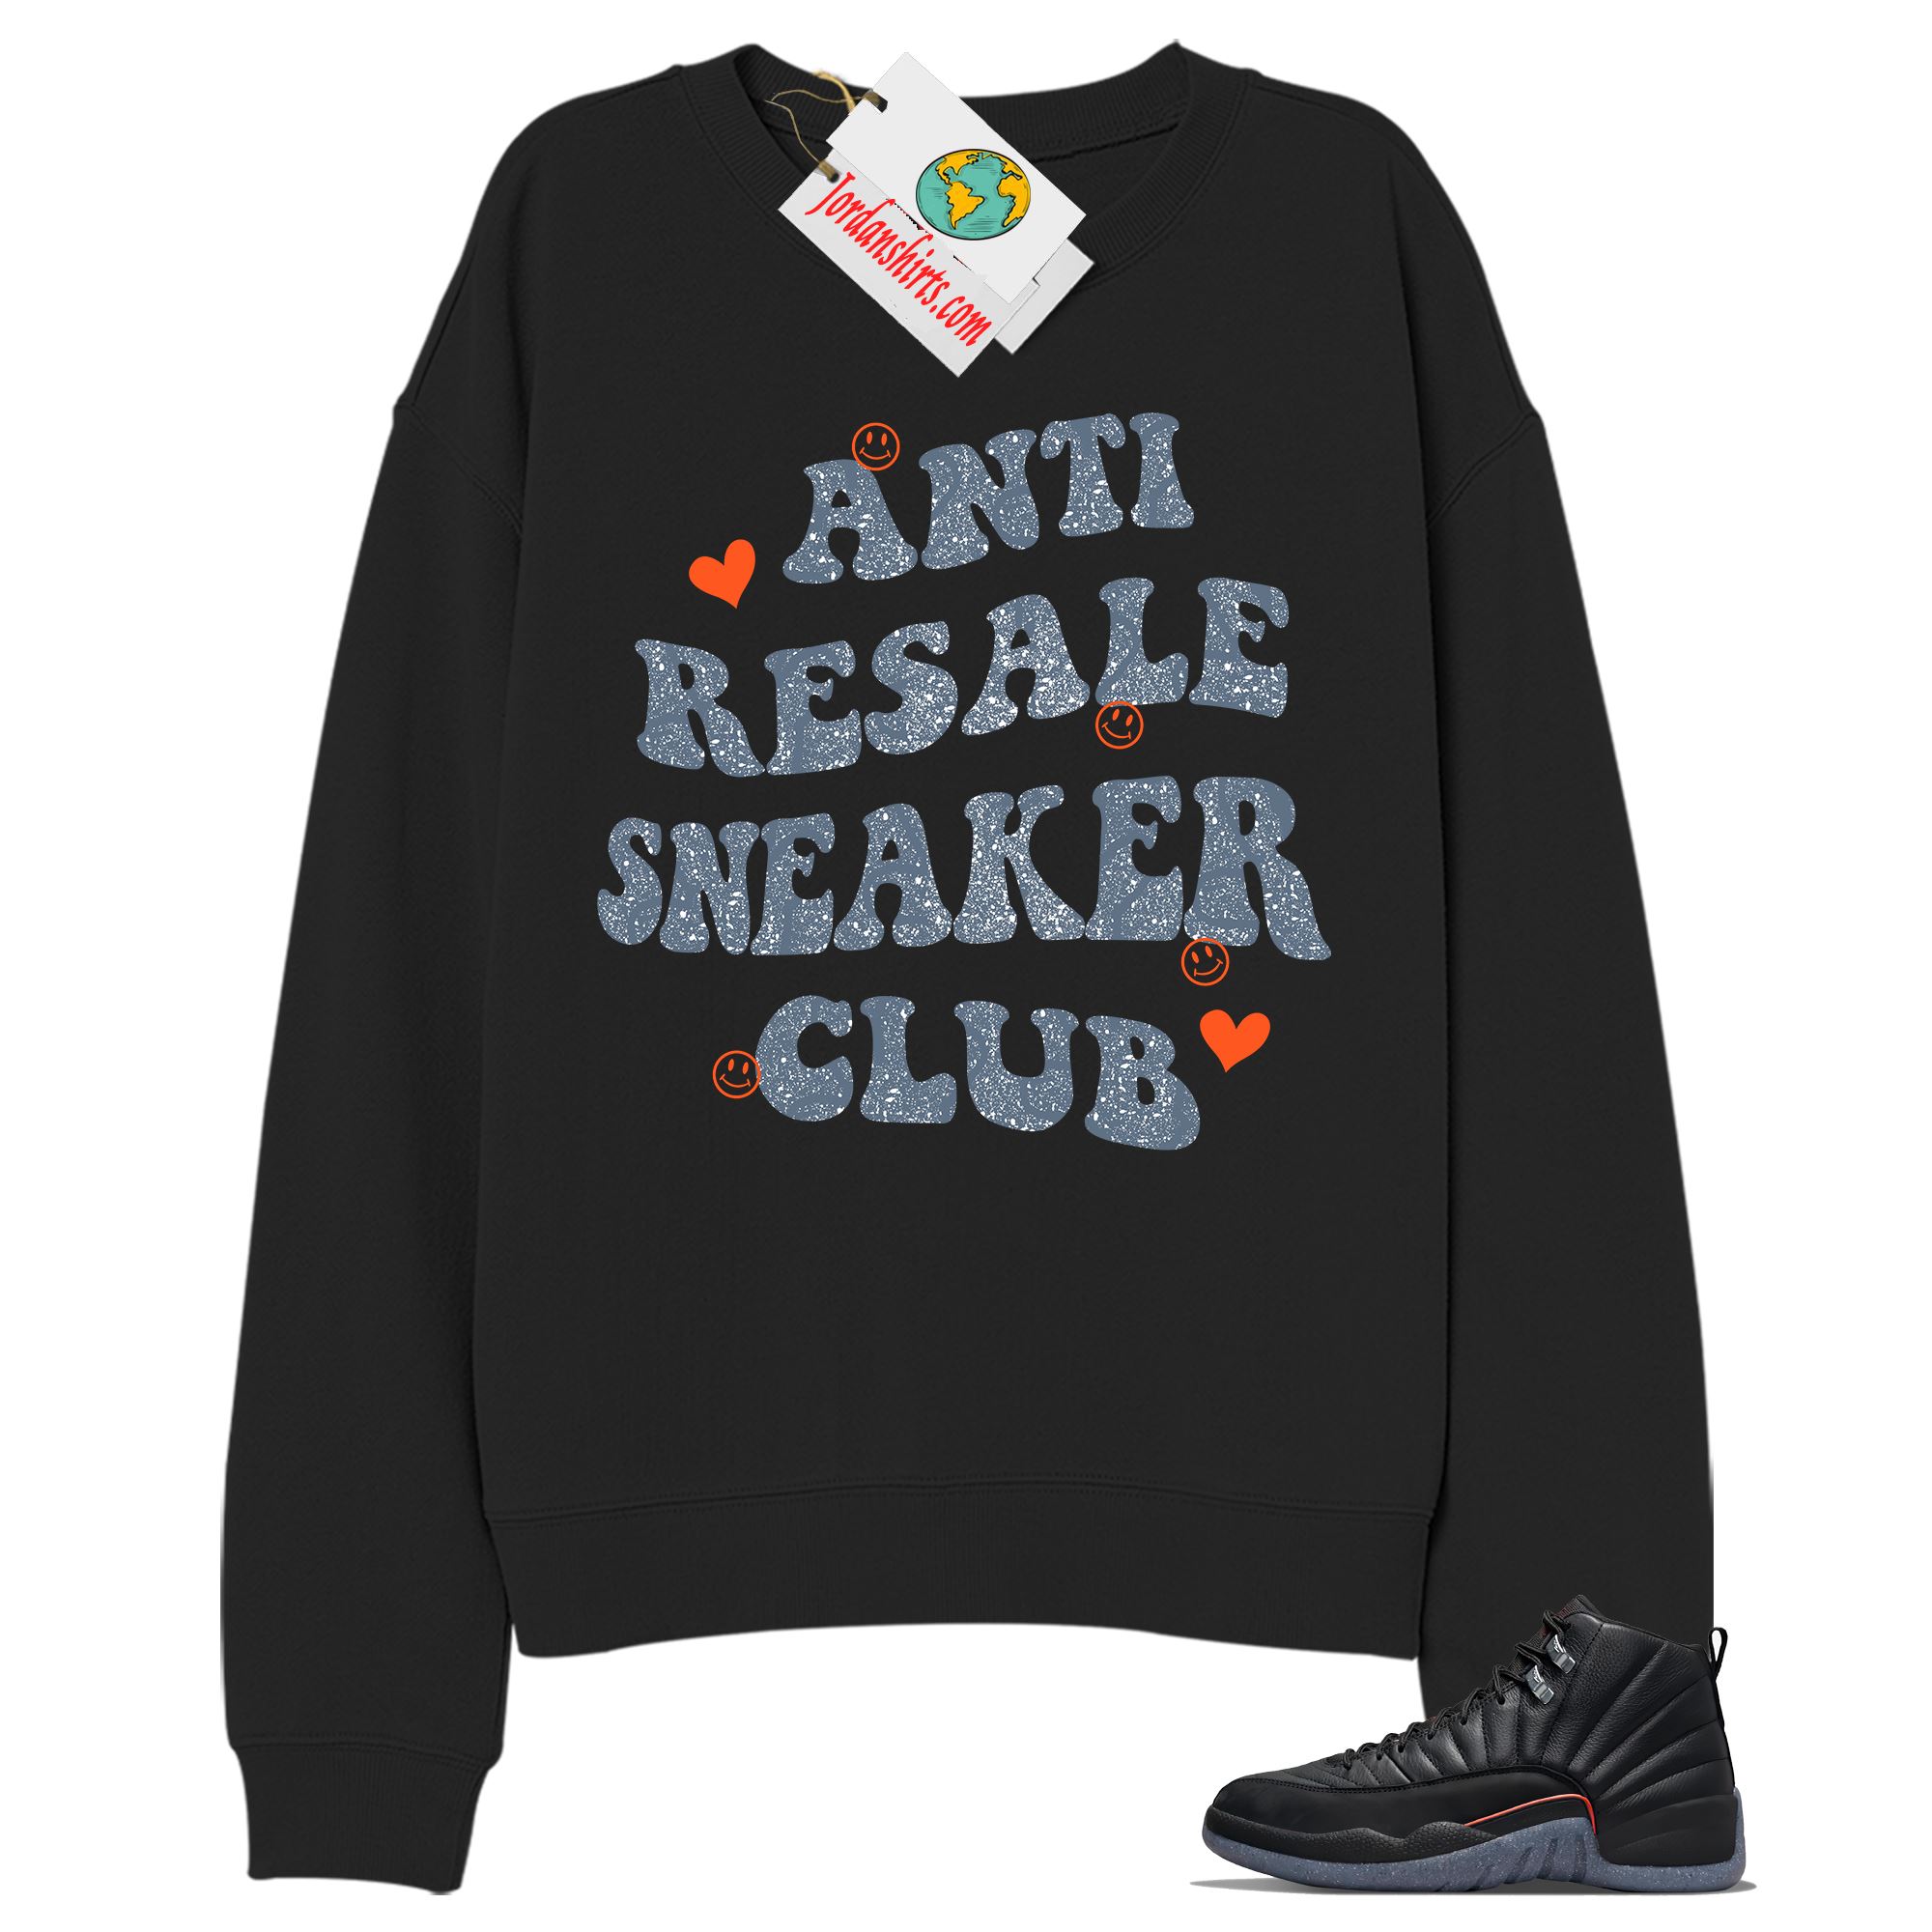 Jordan 12 Sweatshirt, Anti Resale Sneaker Club Black Sweatshirt Air Jordan 12 Utility Grind 12s Size Up To 5xl